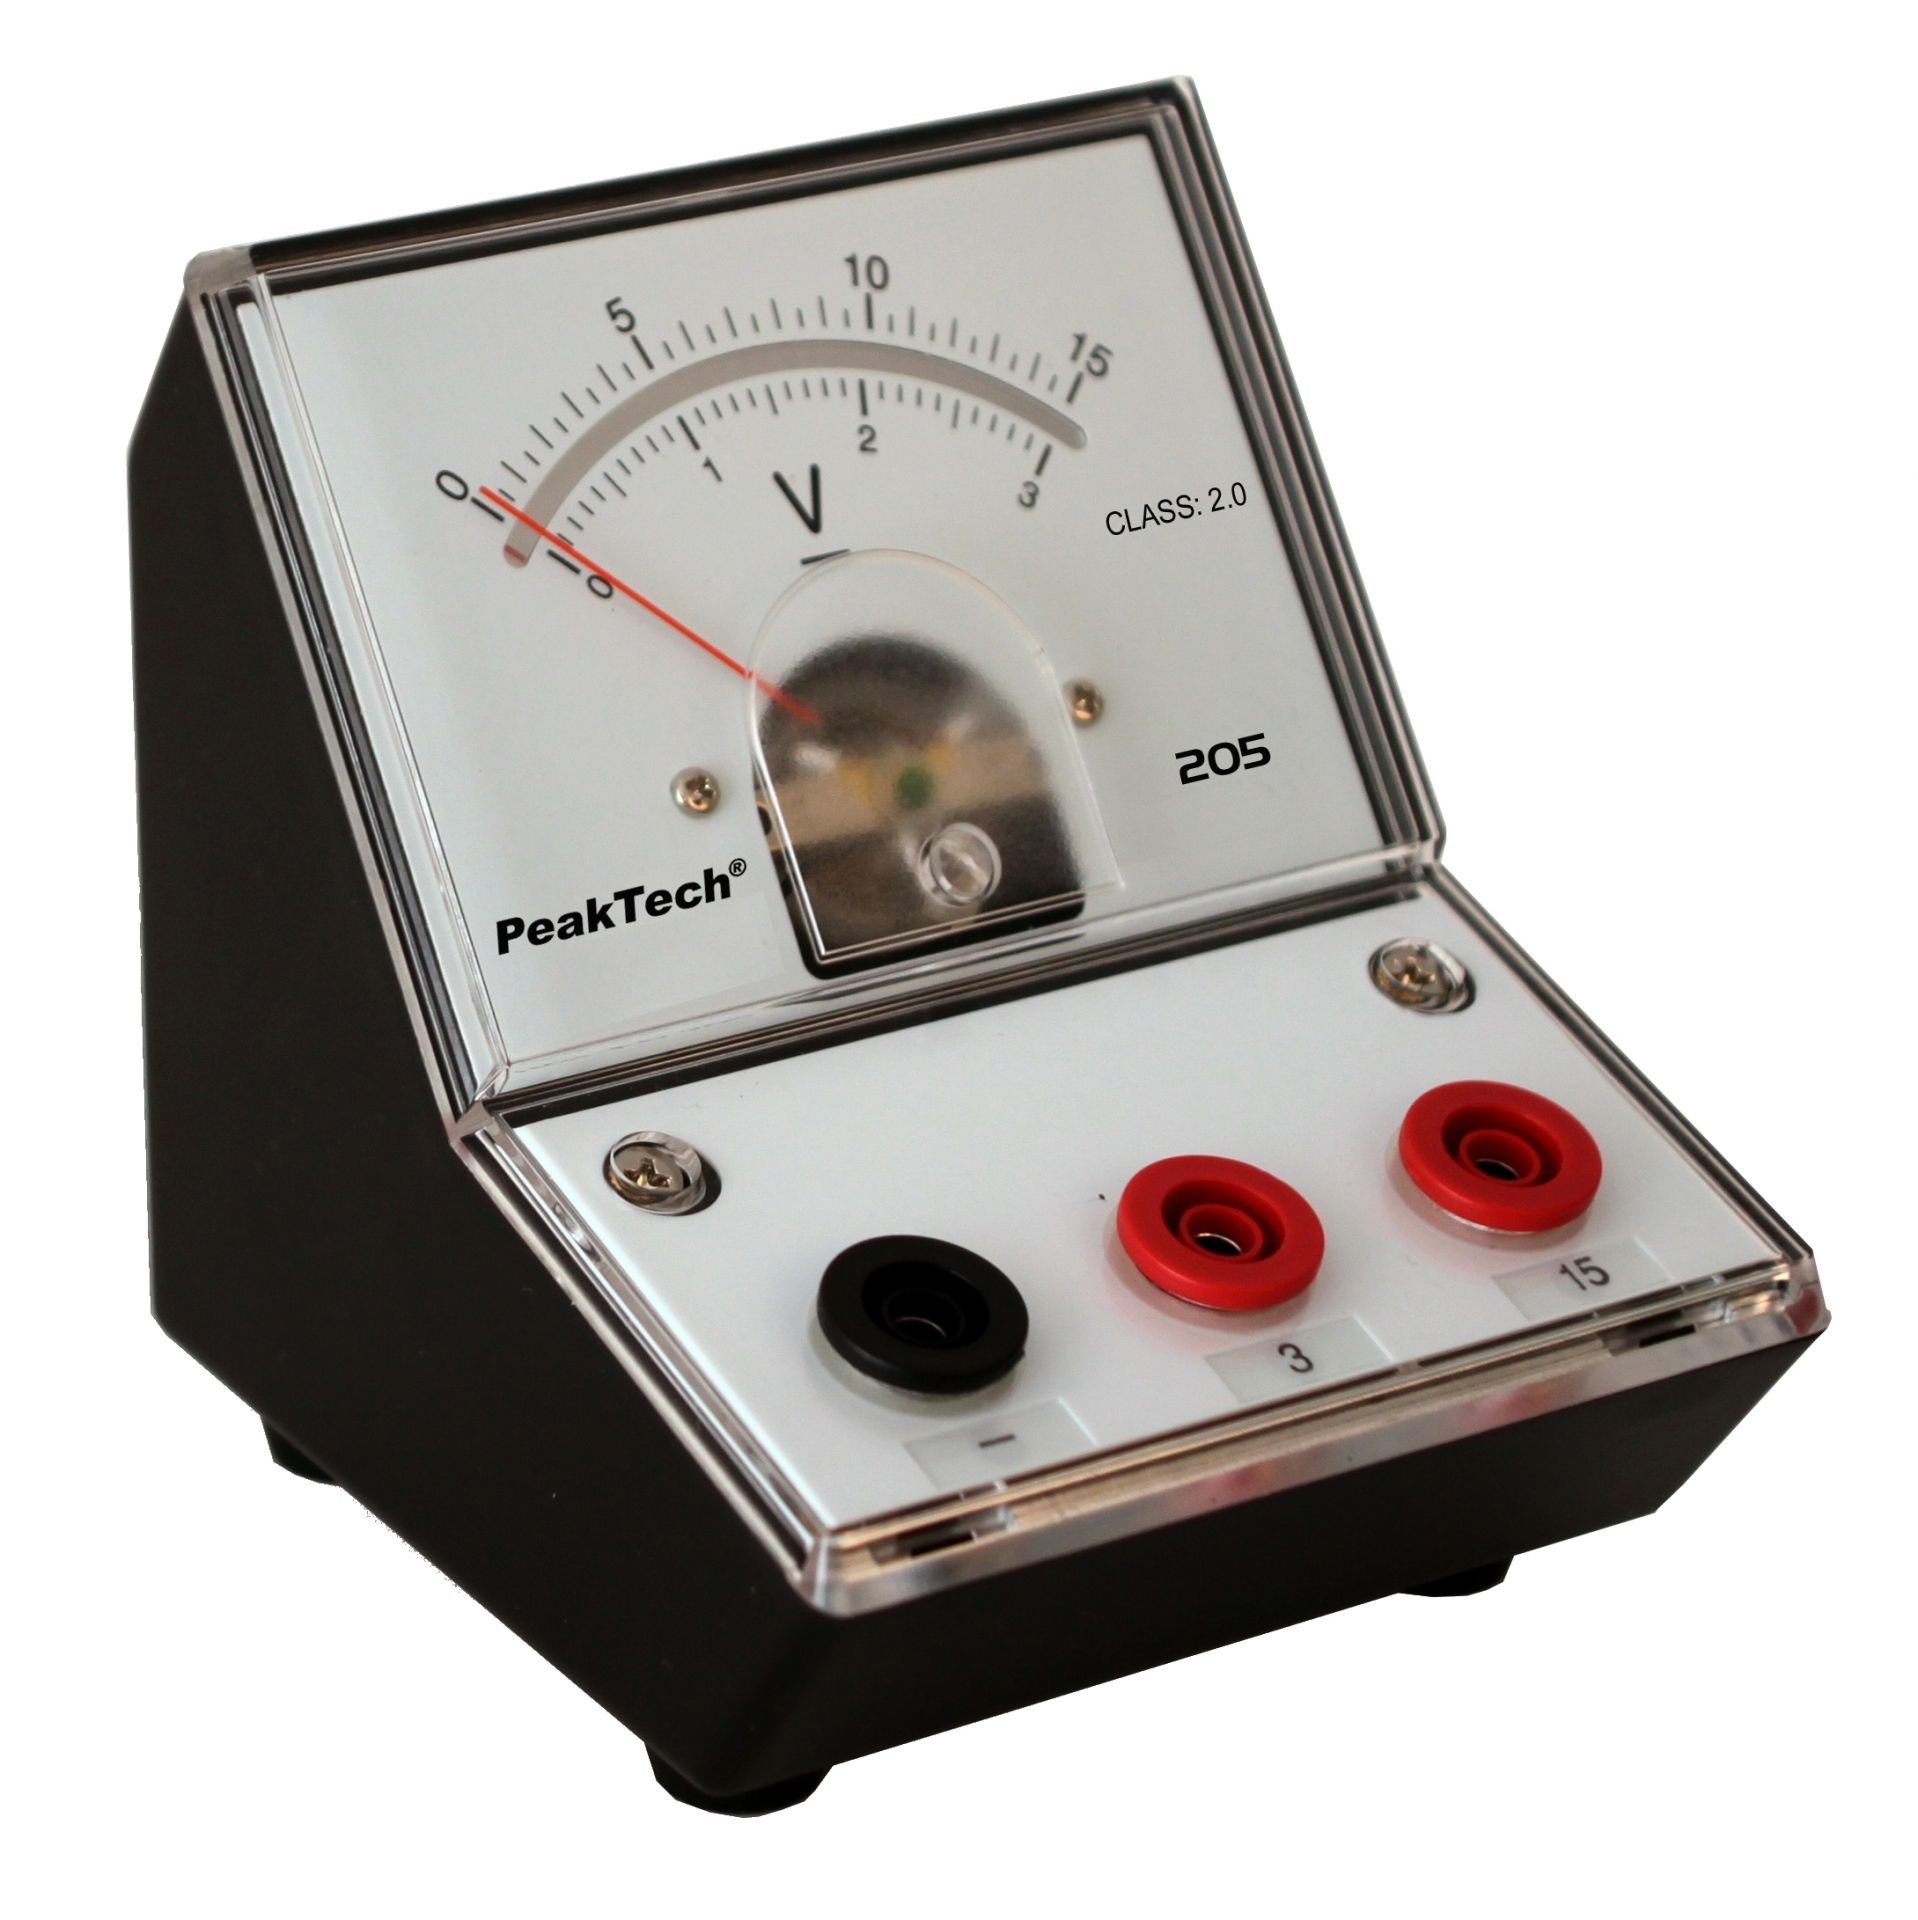 PeakTech Spannungsprüfer PeakTech St) V (ED-205 (1 3-15V), 0 P 15 - 205-05: 3 Analog-Voltmeter 